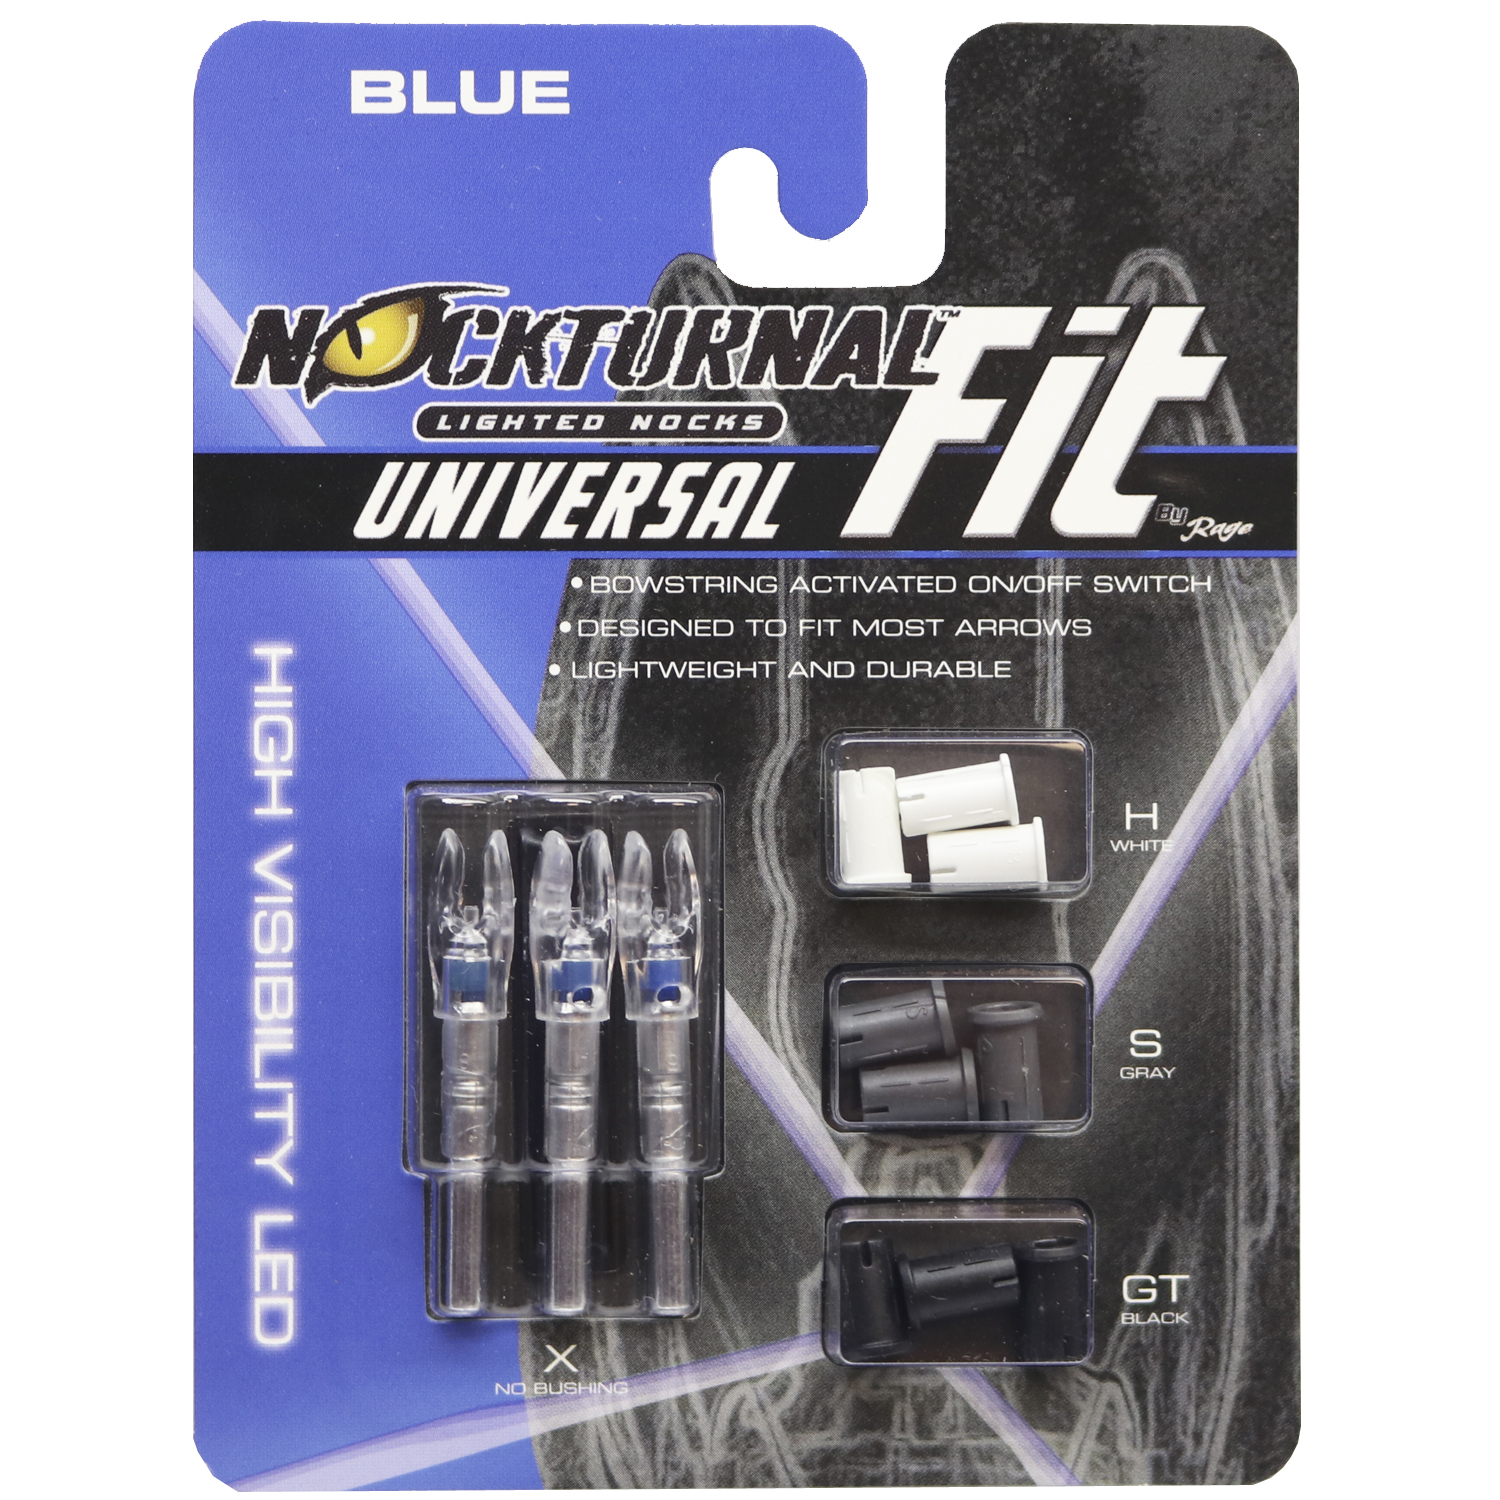 Nockturnal Fit Universal Size Blue Lighted Nock 3 Pack Nt 314. nockturnal l...